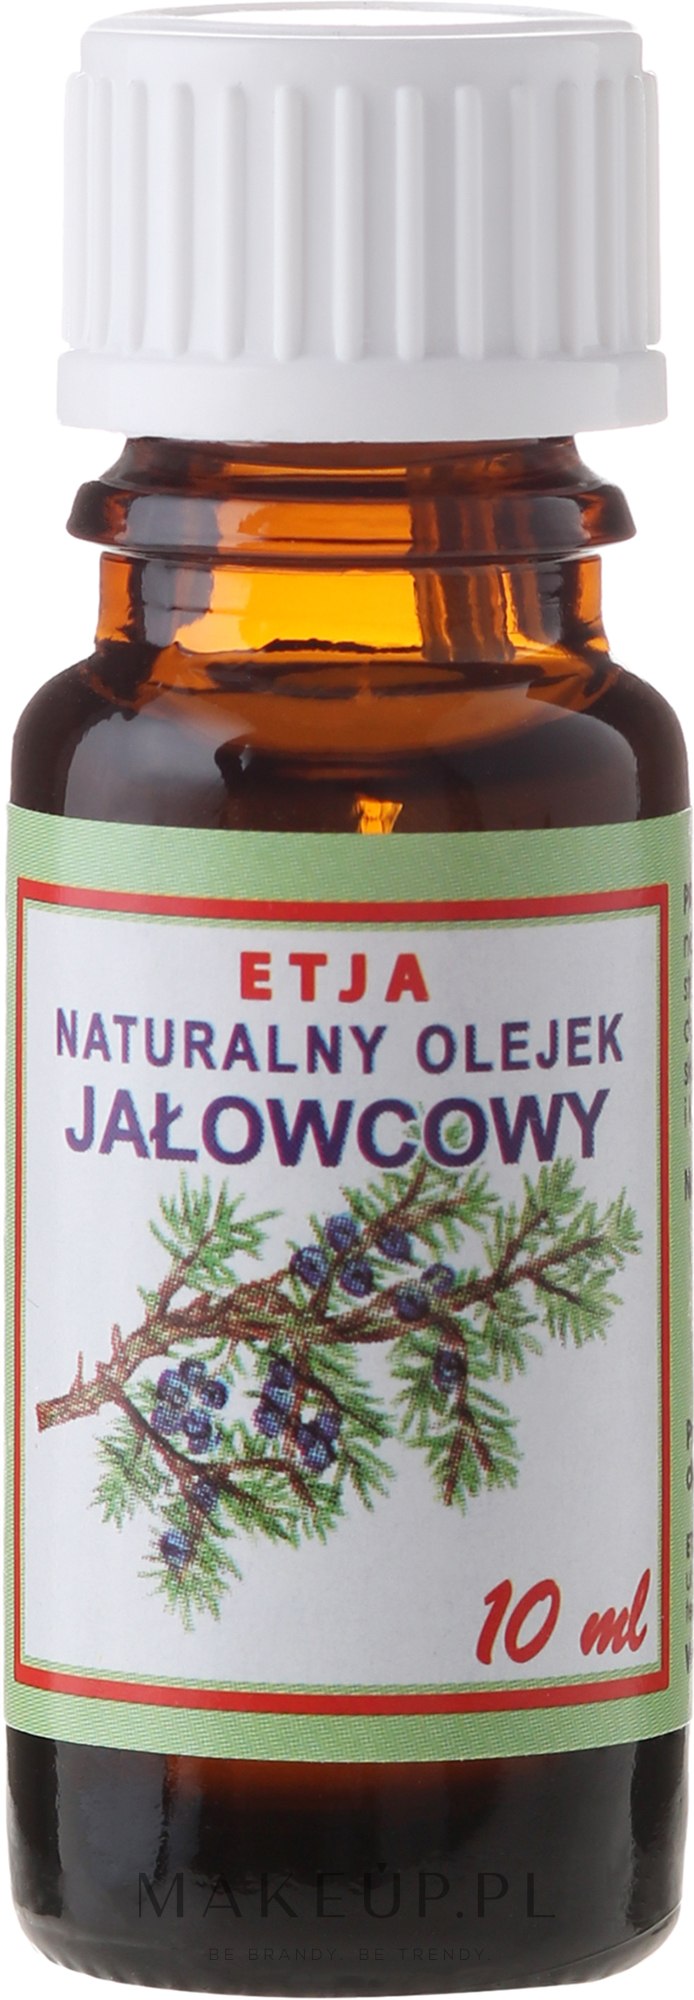 Naturalny olejek eteryczny Jałowcowy - Etja — Zdjęcie 10 ml